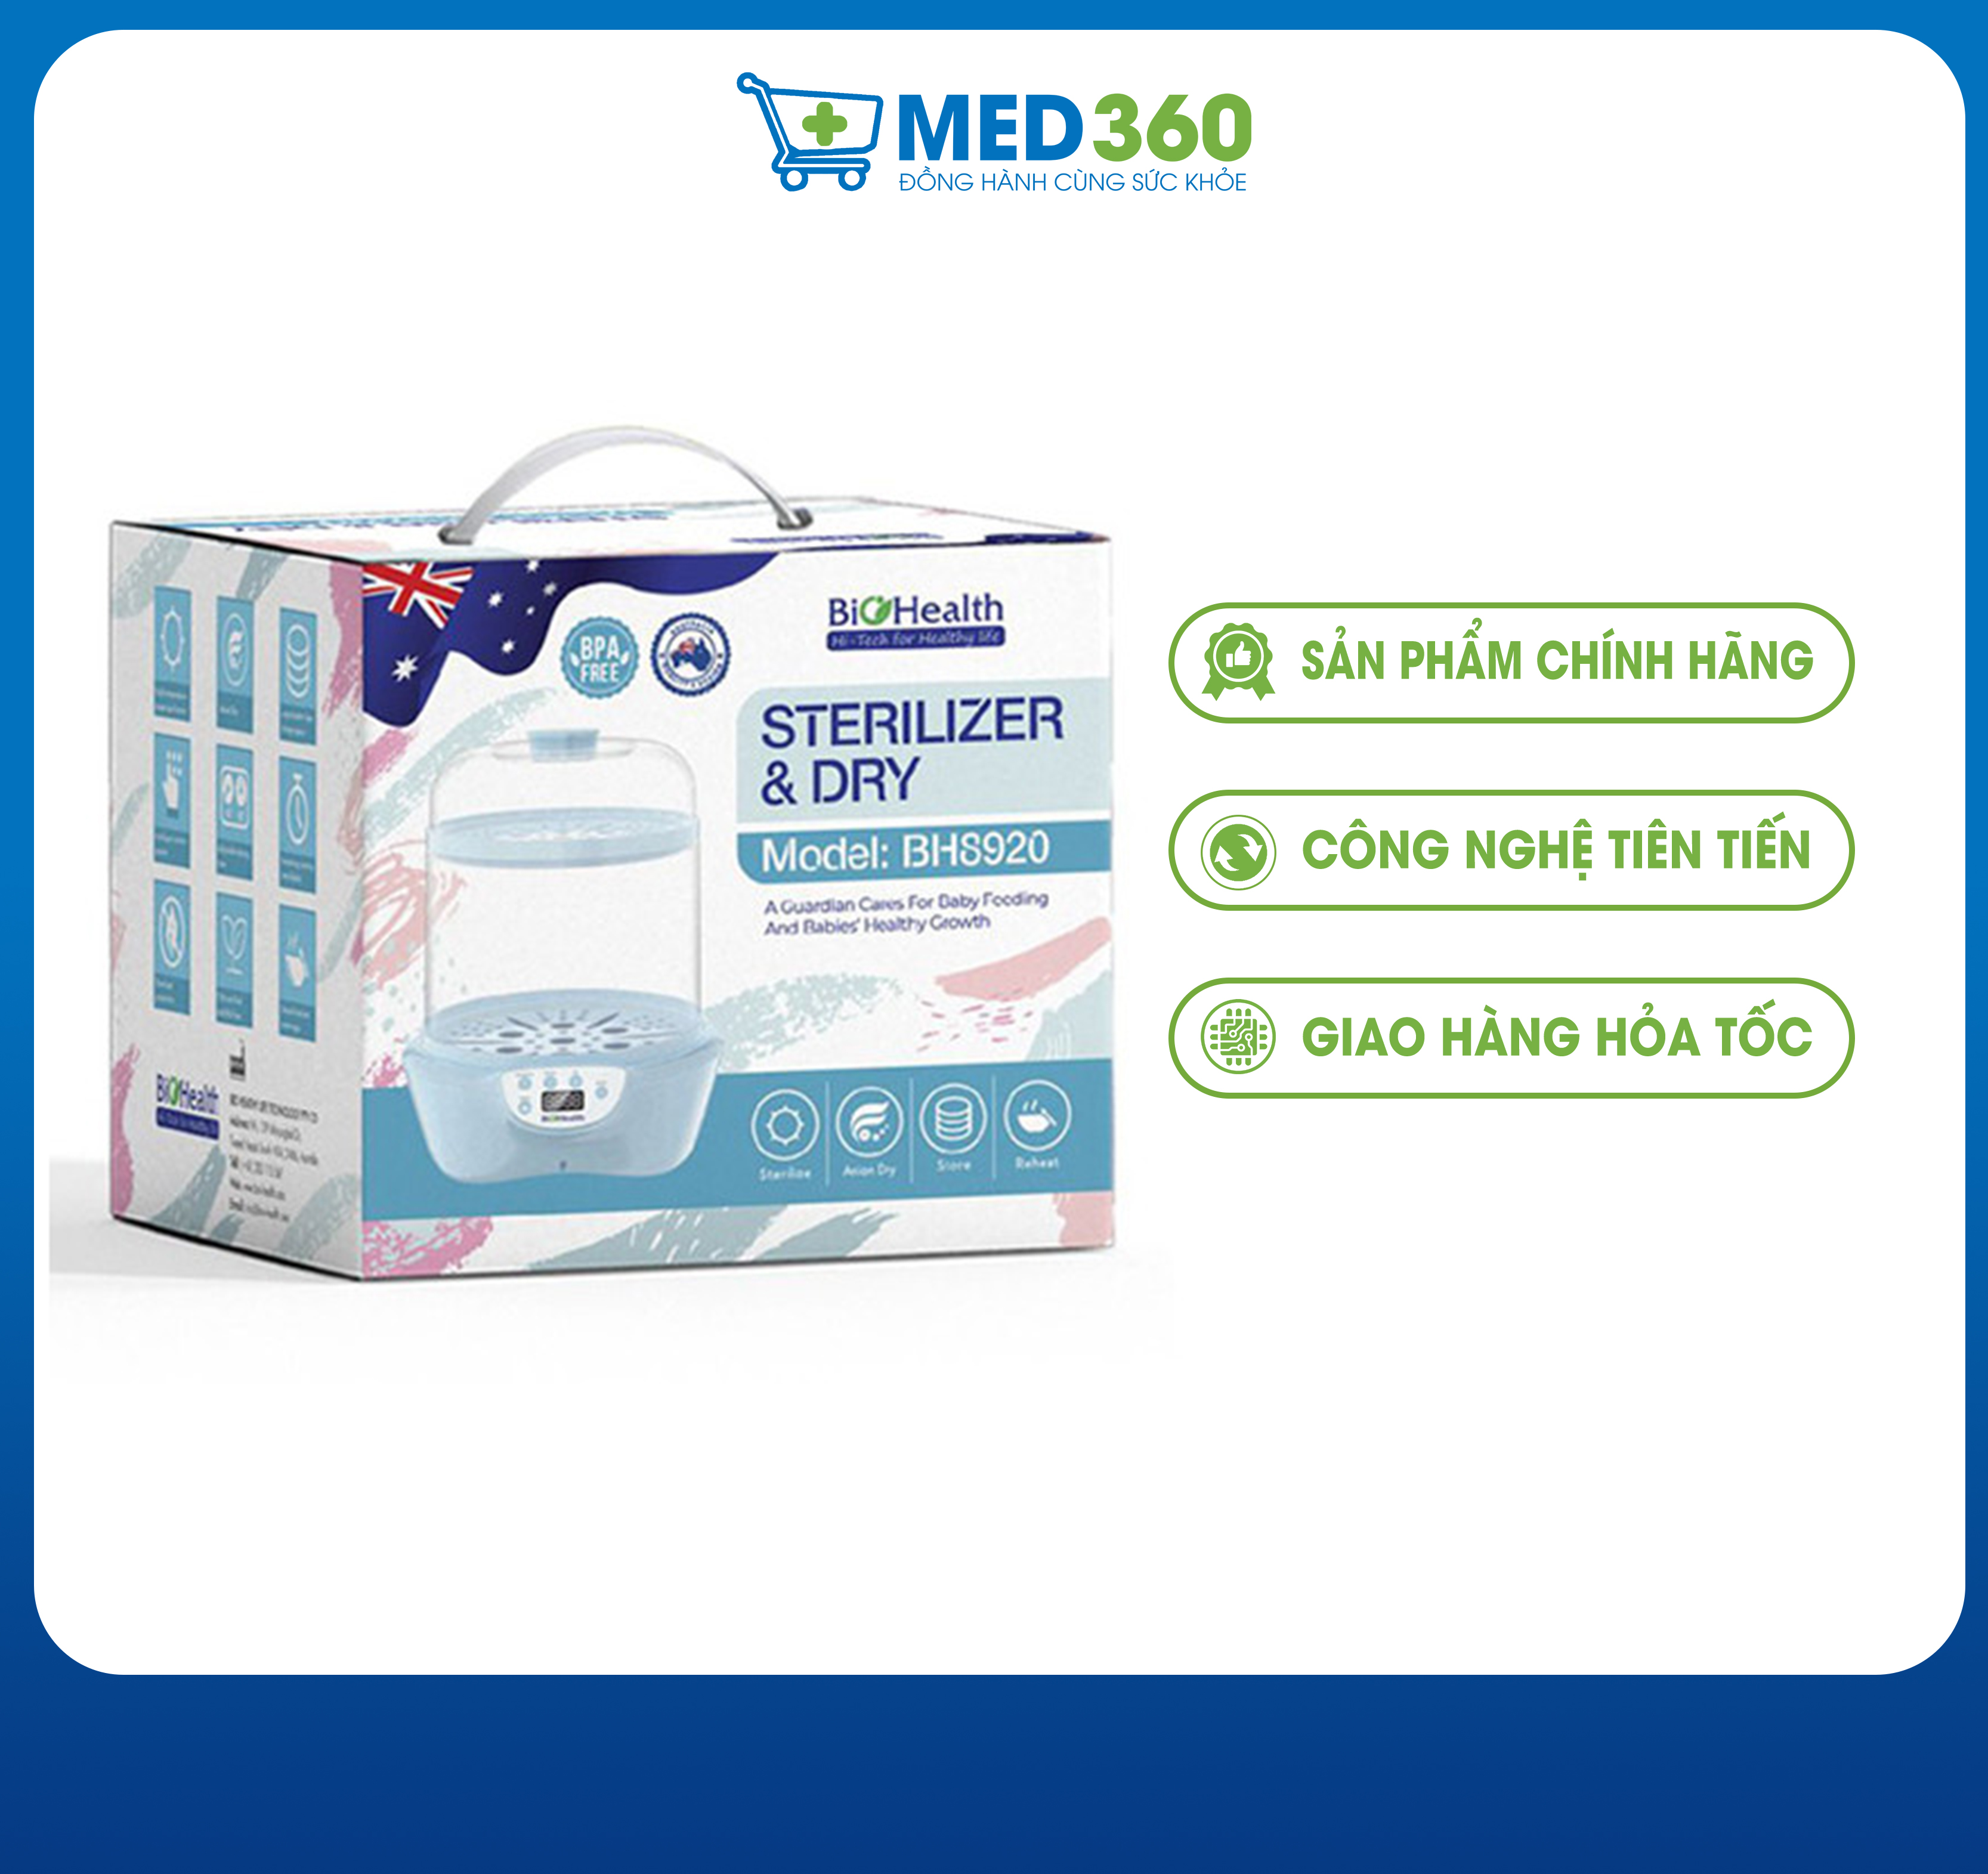 Máy tiệt trùng và sấy khô bình sữa Biohealth BH8920 - TBYT Med360